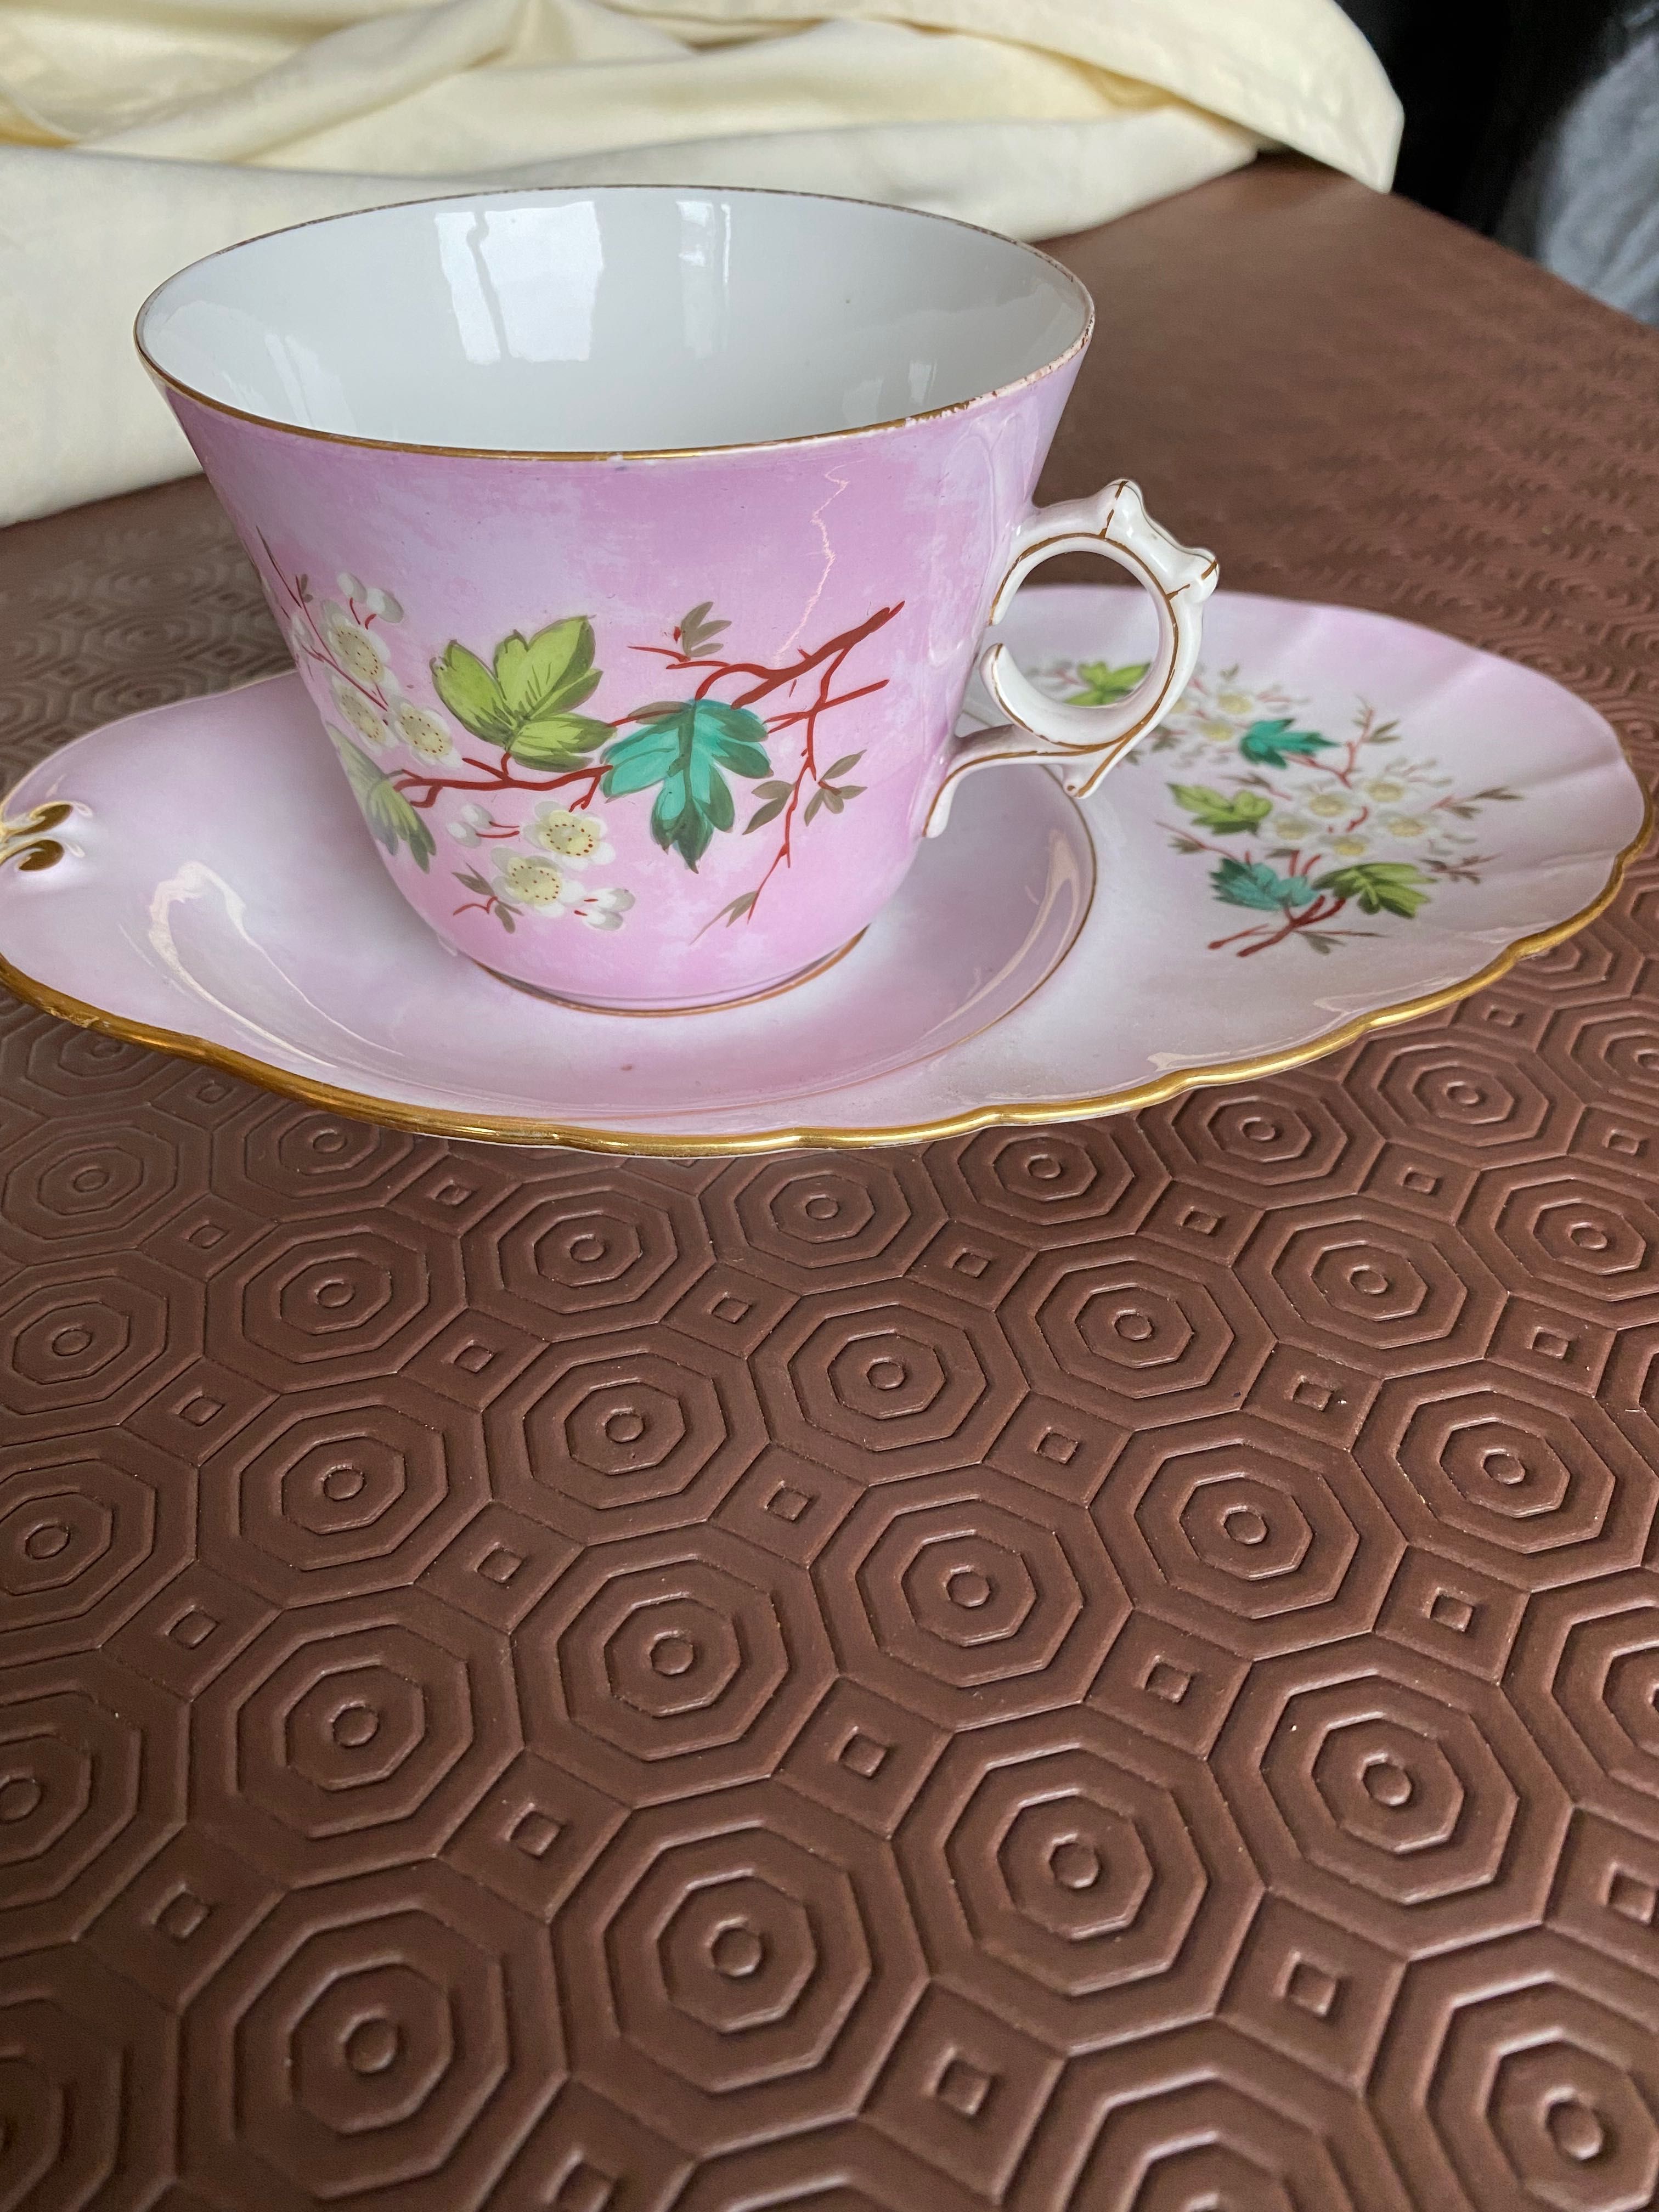 Chávena almoçadeira com prato pintada à mão